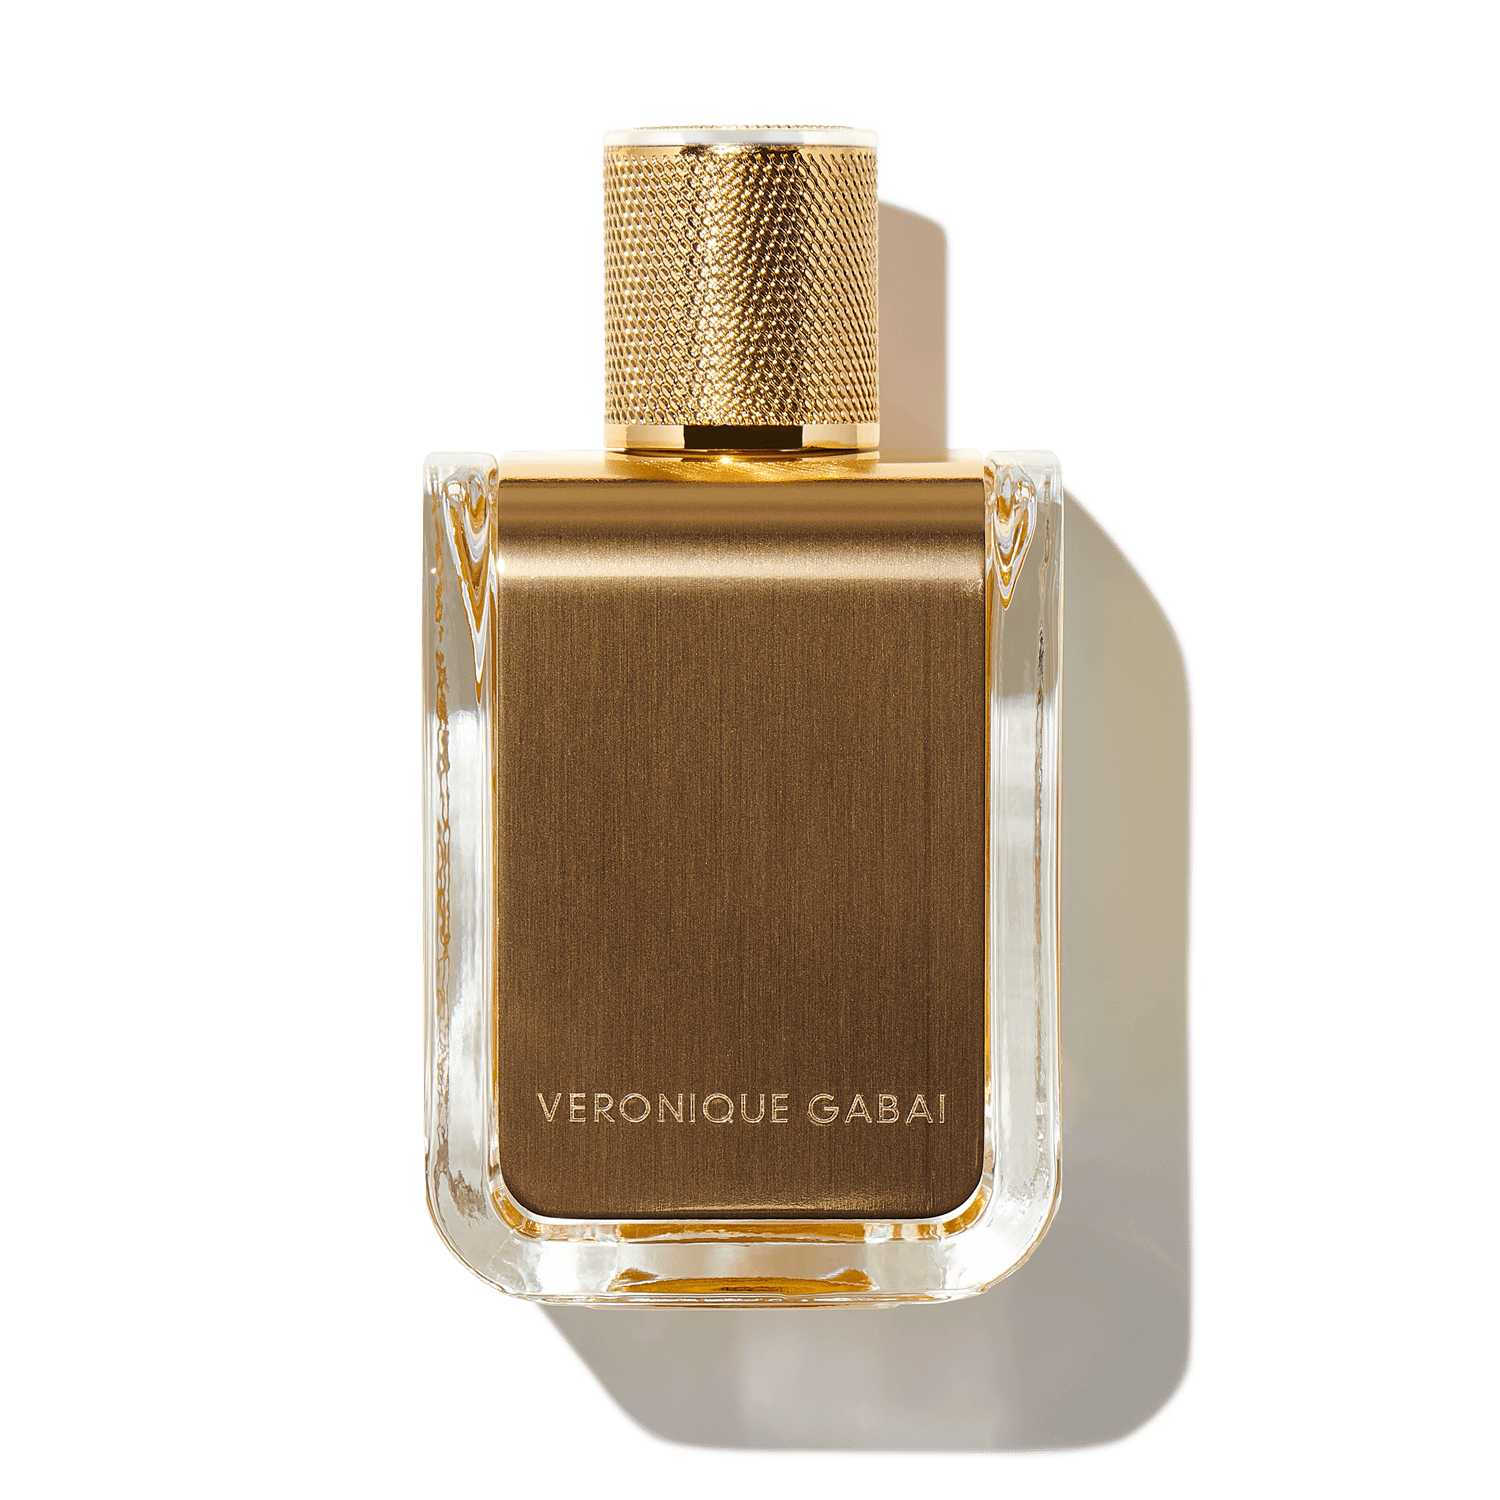 Veronique Gabai Golden Oud Eau de Parfum (85ml) - Multi - One Size